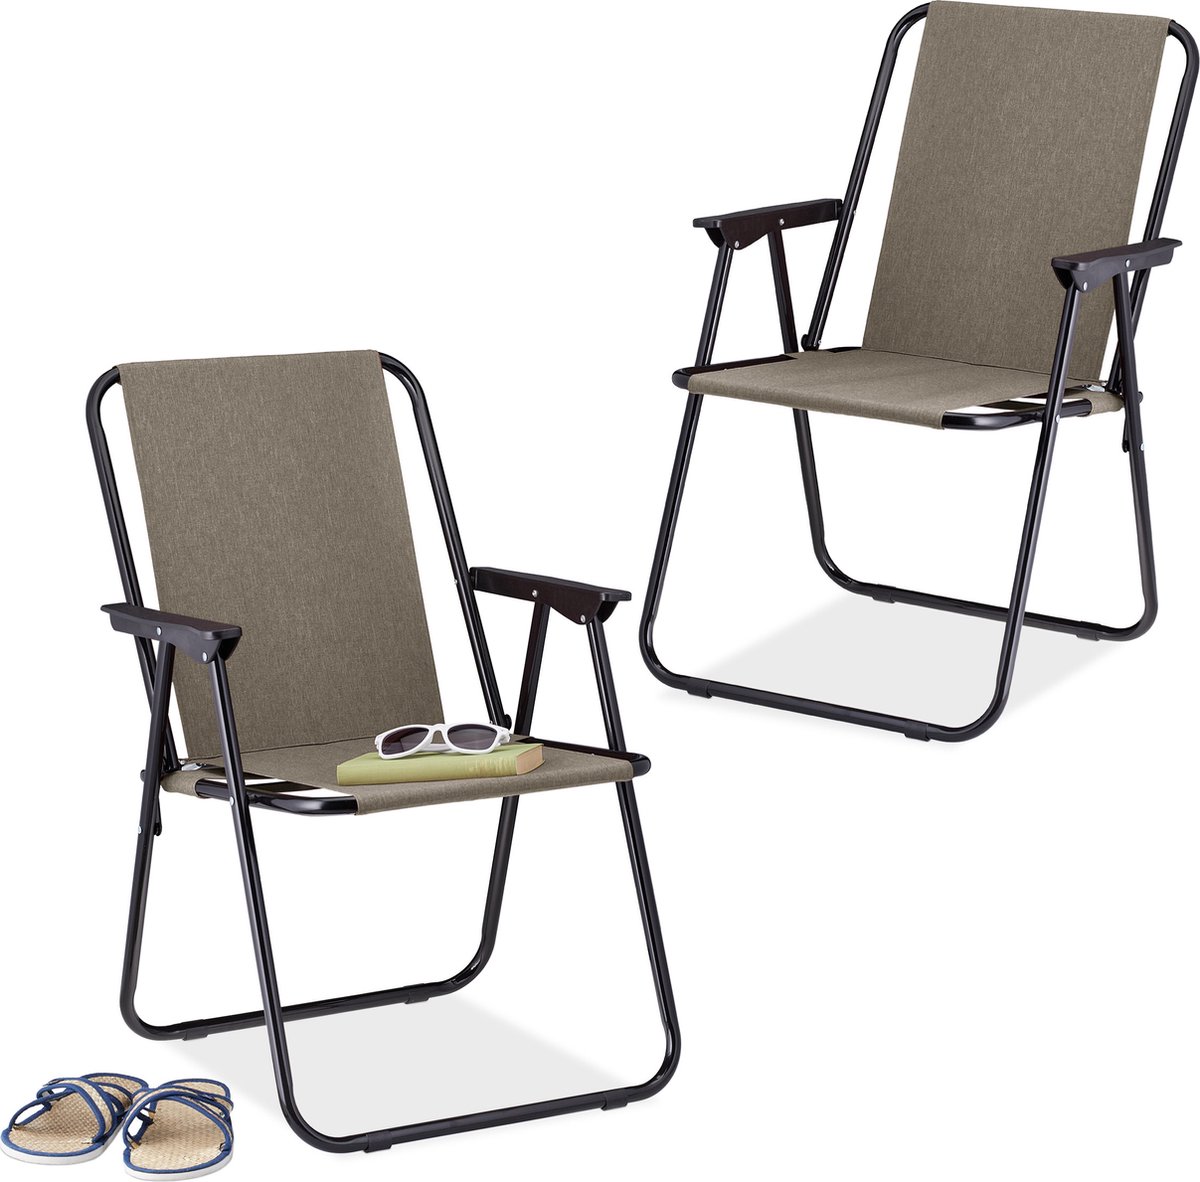 Relaxdays campingstoel inklapbaar set van 2 - klapstoel 100 kg - visstoel met armleuningen - beige